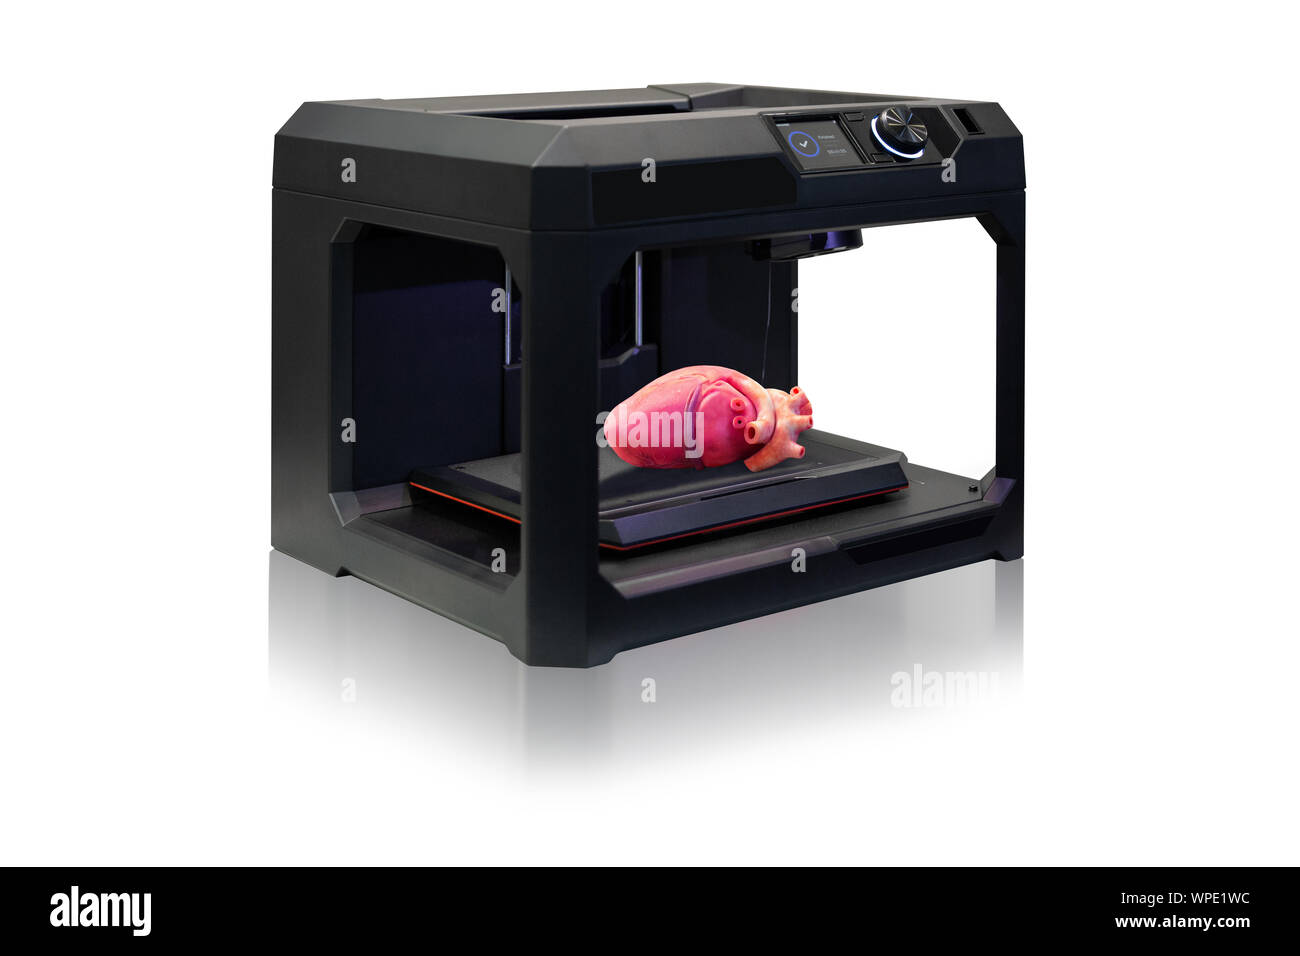 Stampante 3d con stampato un cuore umano Foto Stock